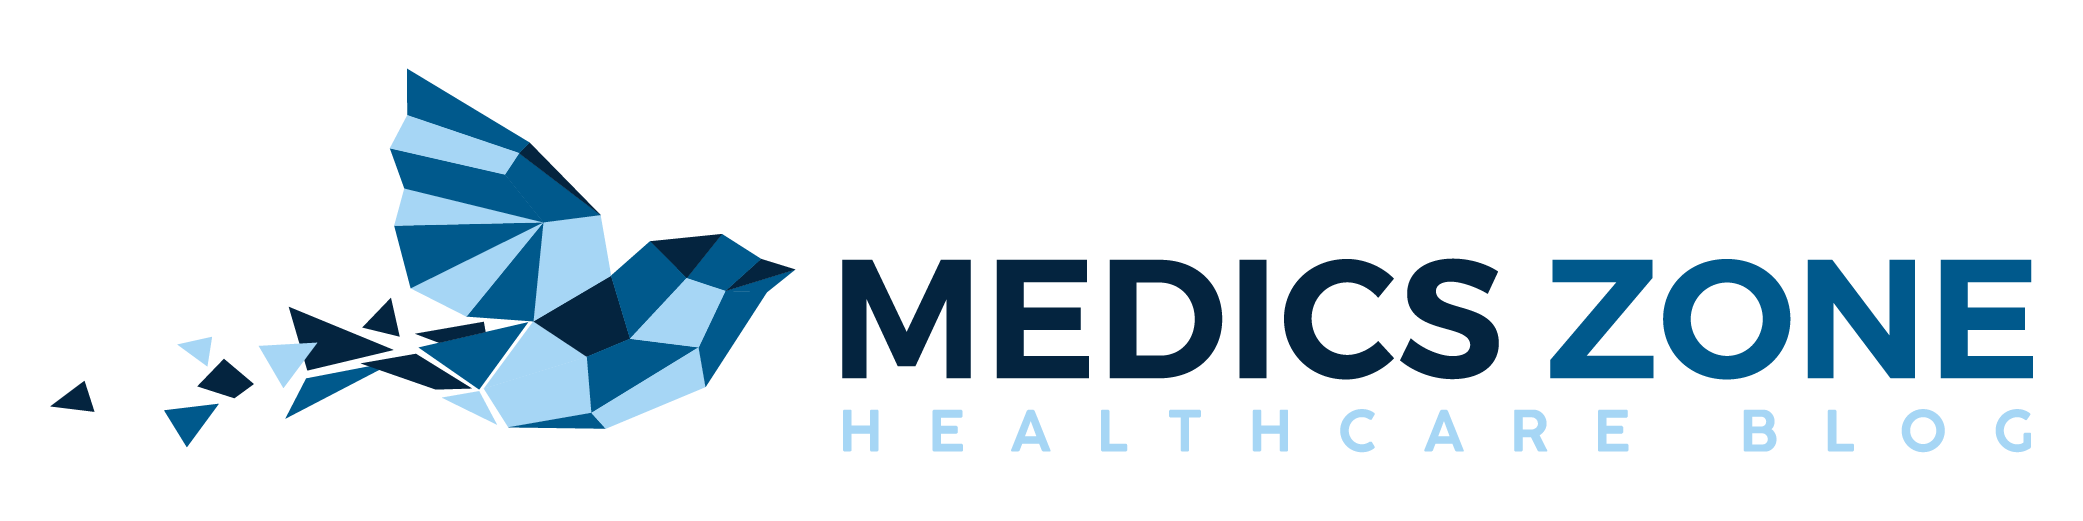 Medicszone logo